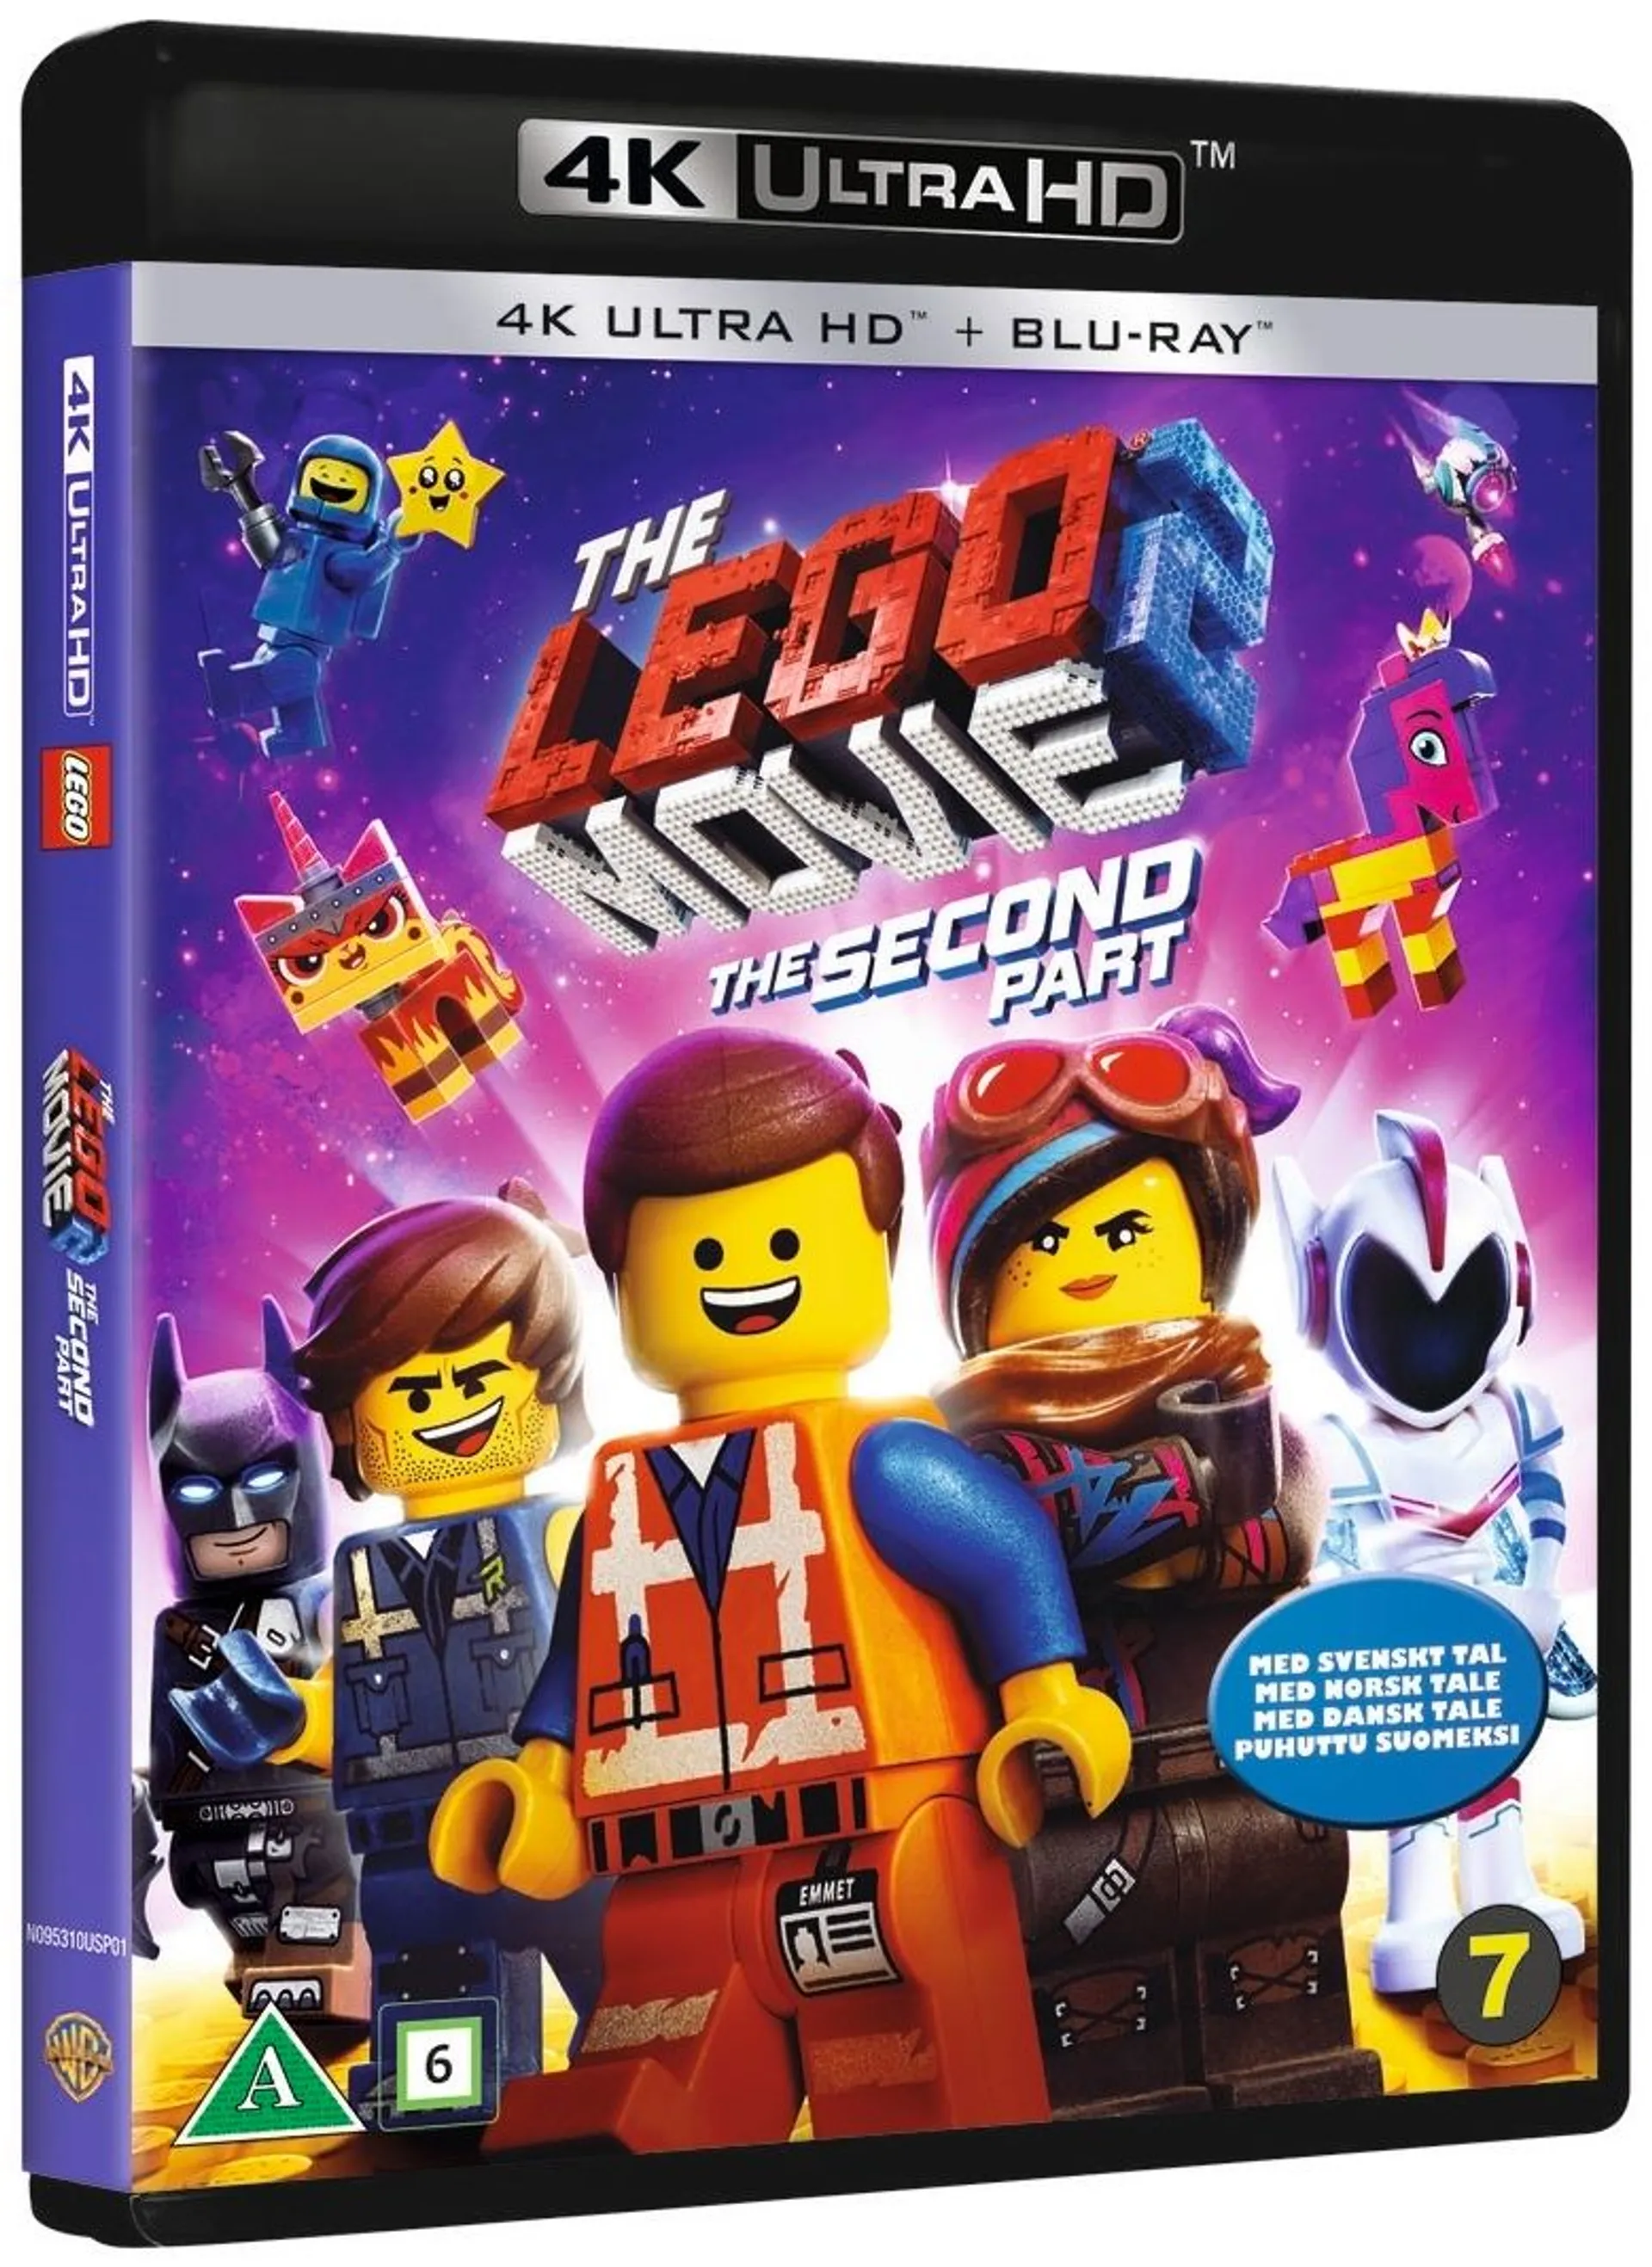 Lego Movie 2 4K UHD + Blu-ray